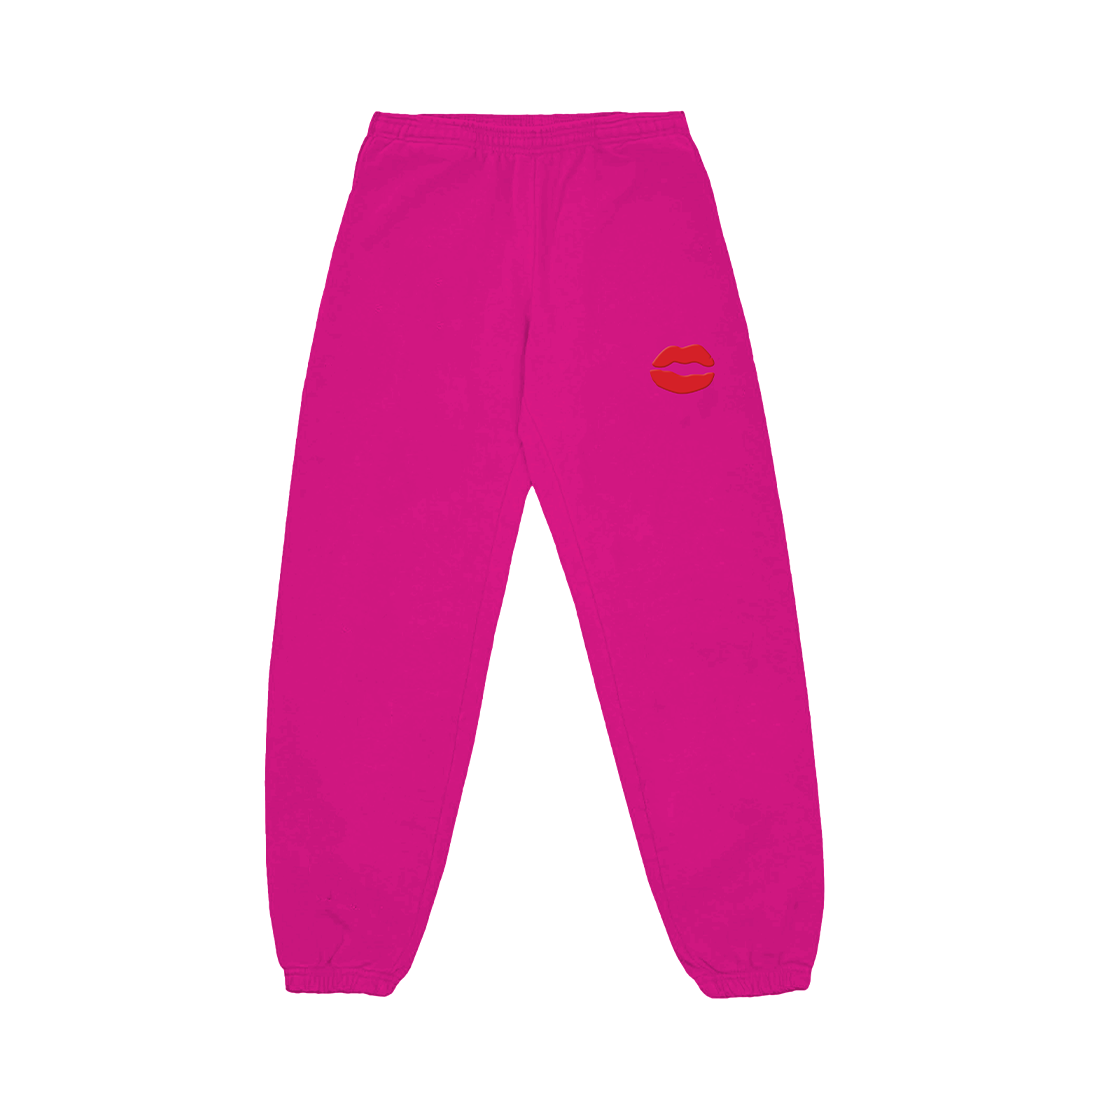 POISON POISON SWEATSUIT (PINK) Sweatpants Front